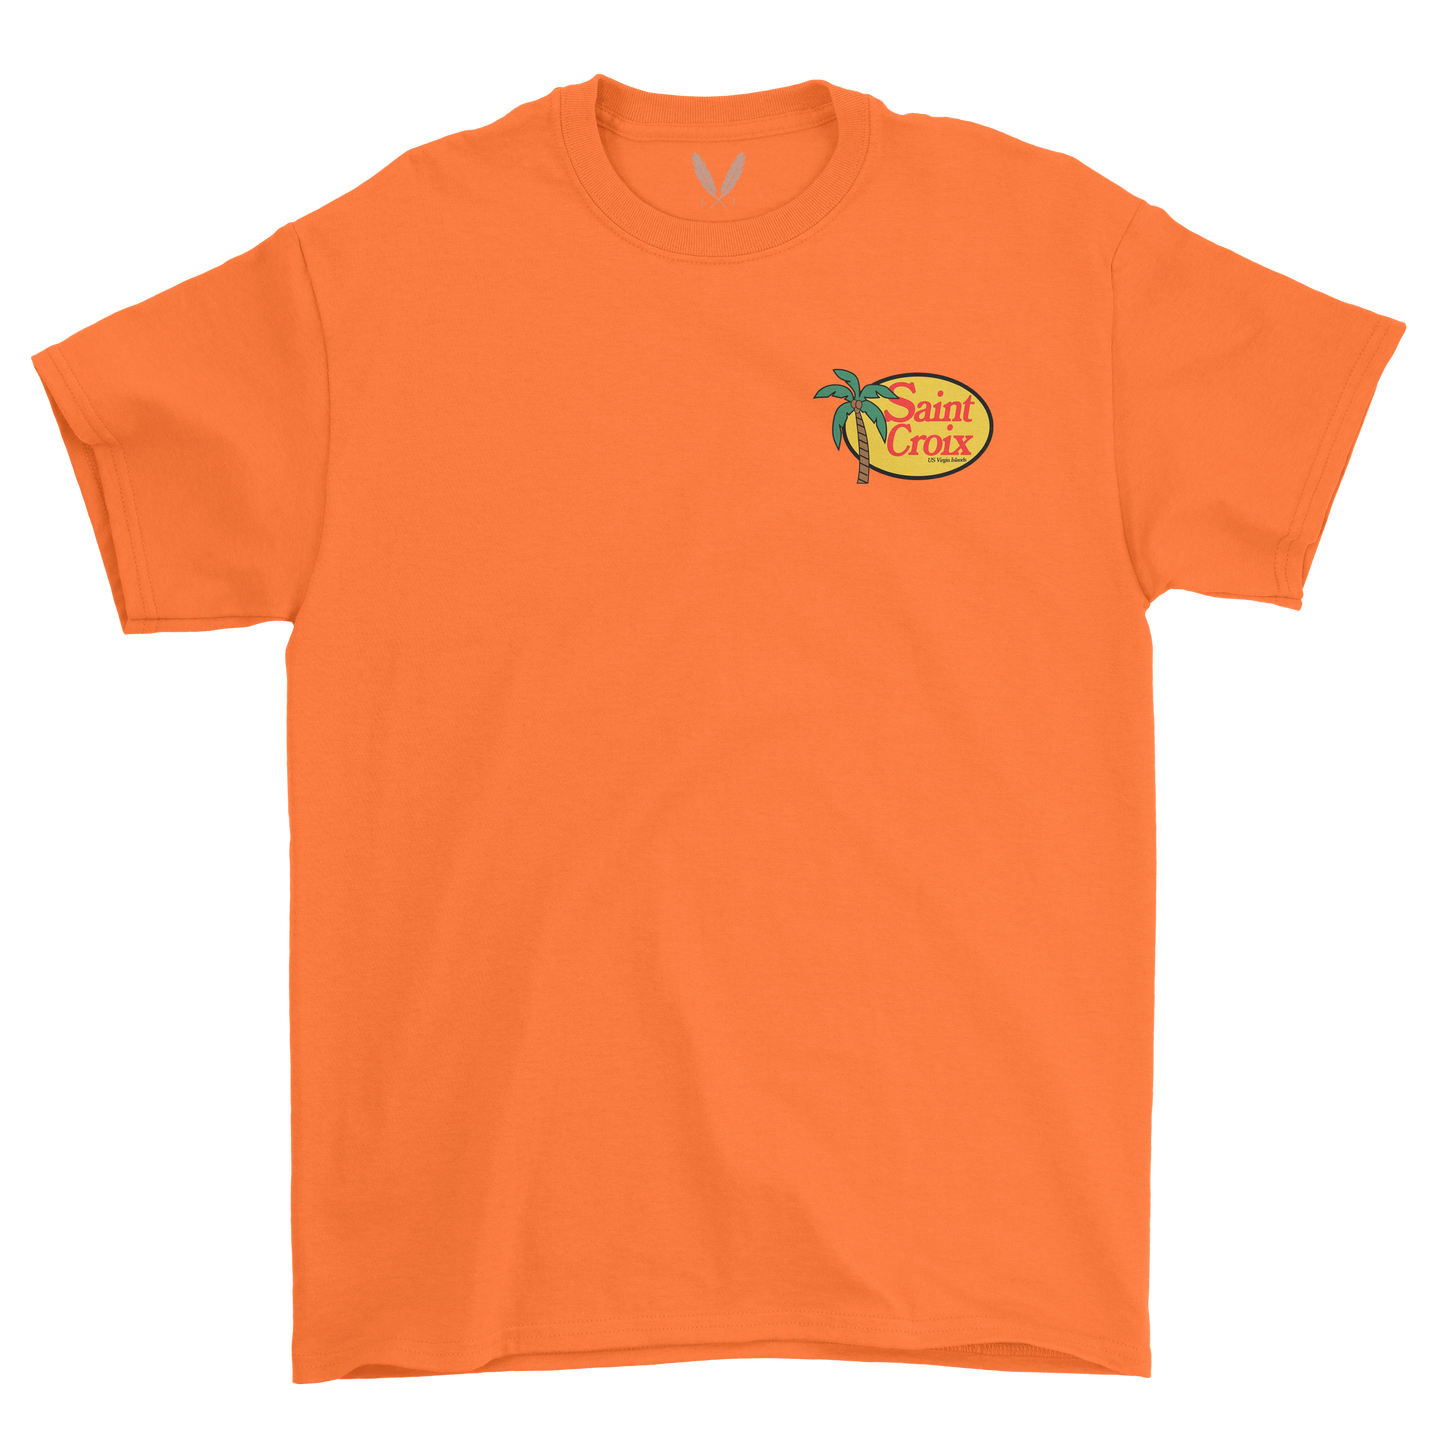 Saint Croix Pro Shop - Orange